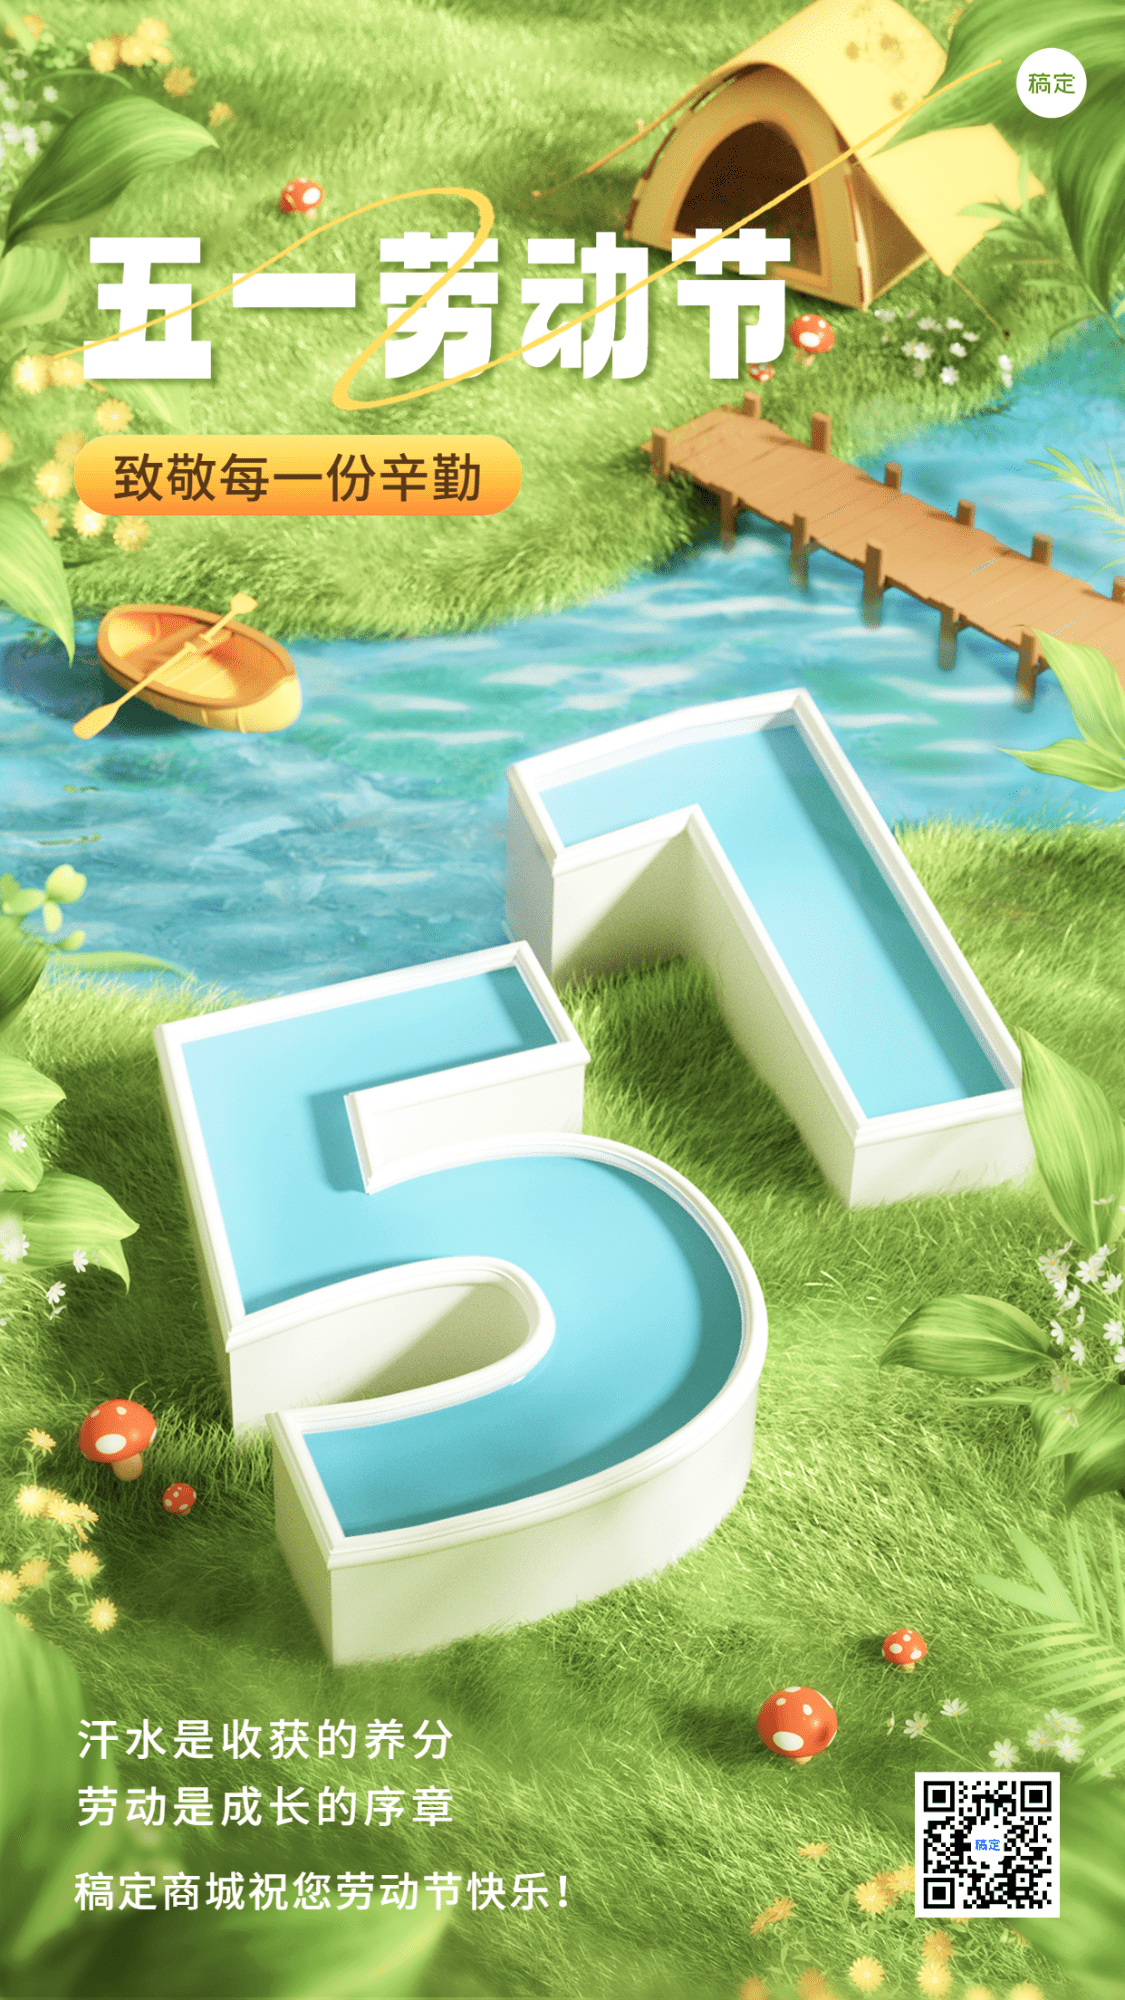 劳动节商超超市节日祝福51大字3D竖版海报预览效果